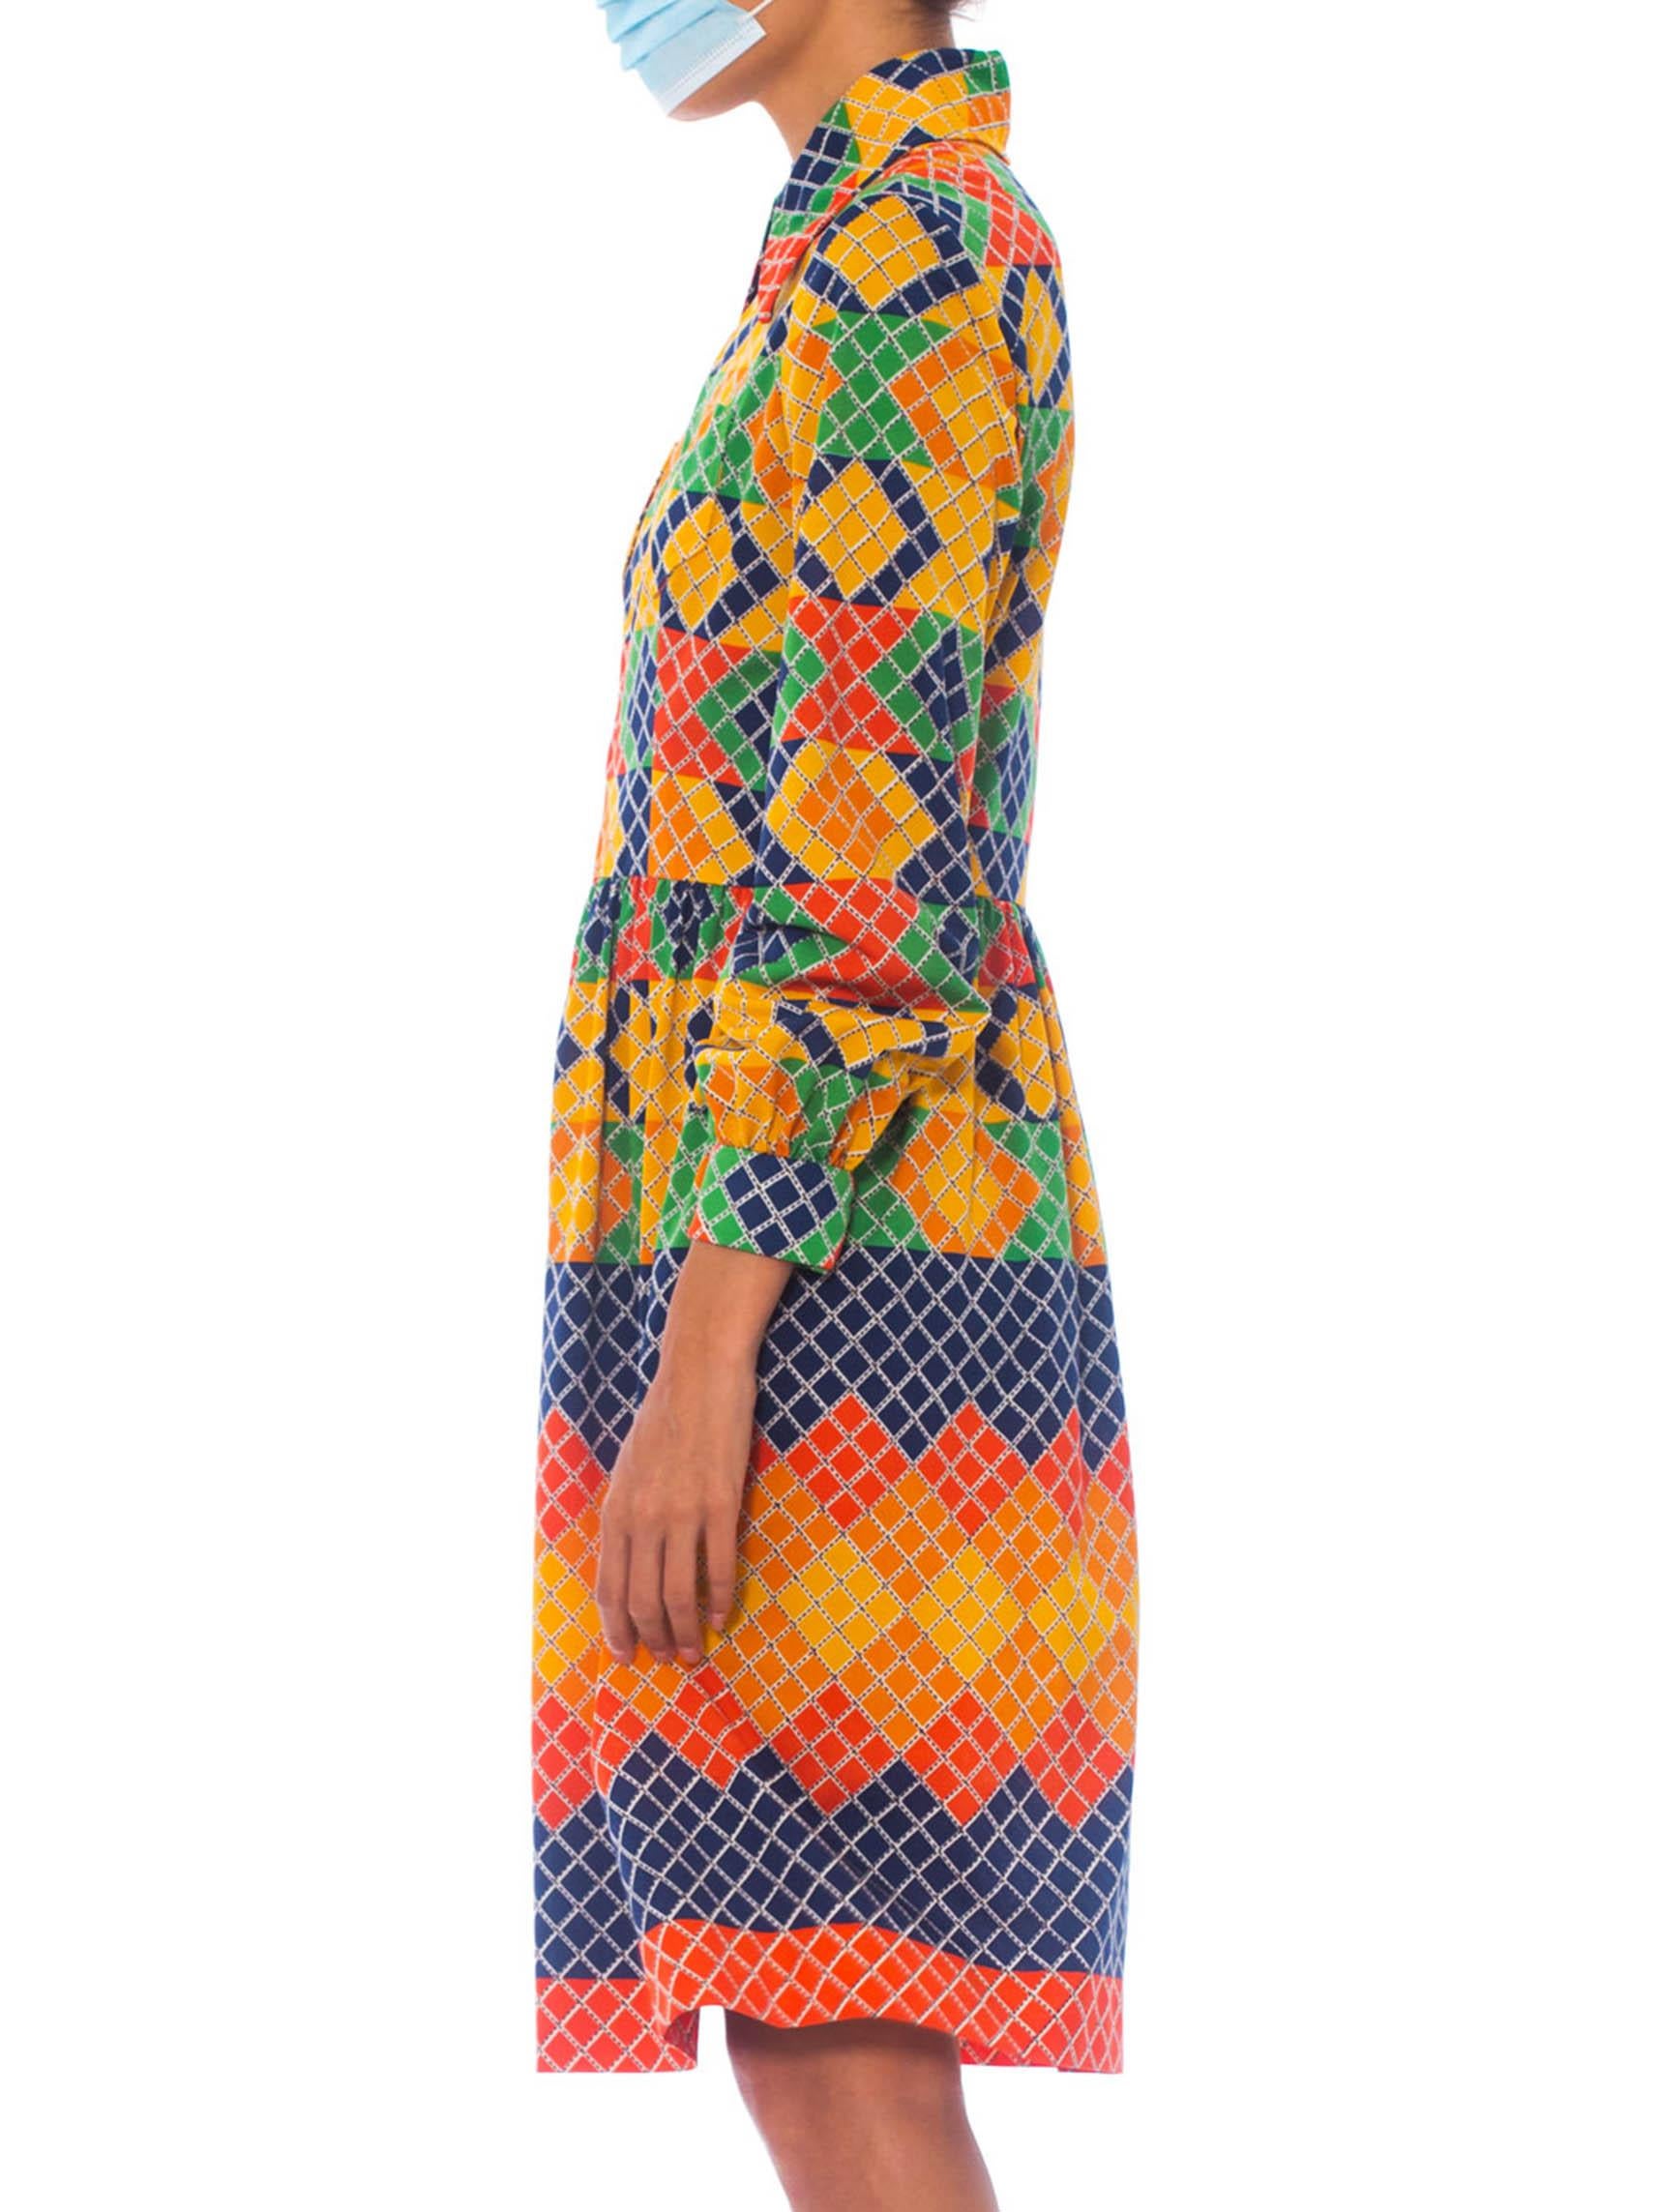 OSCAR DE LA RENTA Robe chemise en jersey de polyester multicolore à motifs géométriques, années 1960 Excellent état à New York, NY